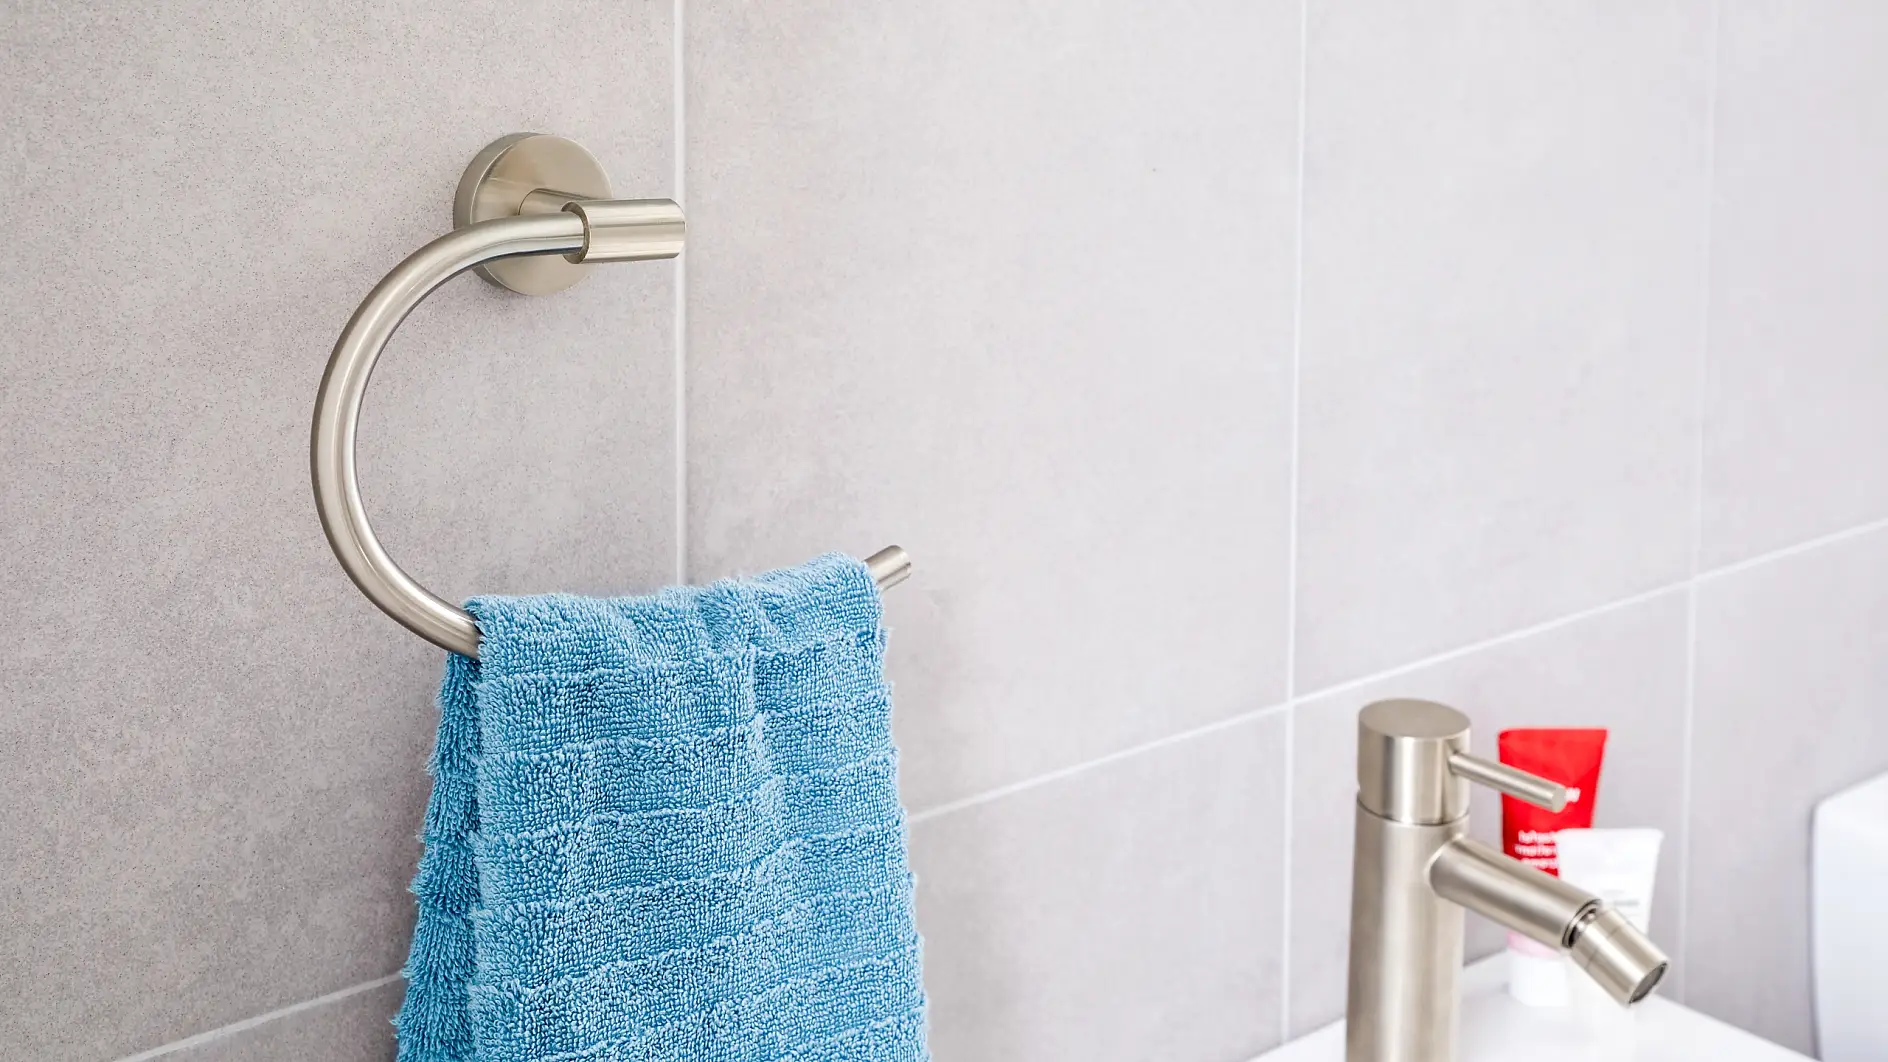 Noblesný dizajn spĺňa požiadavky na efektívne používanie a udržanie ručníkov v blízkosti umývadla.